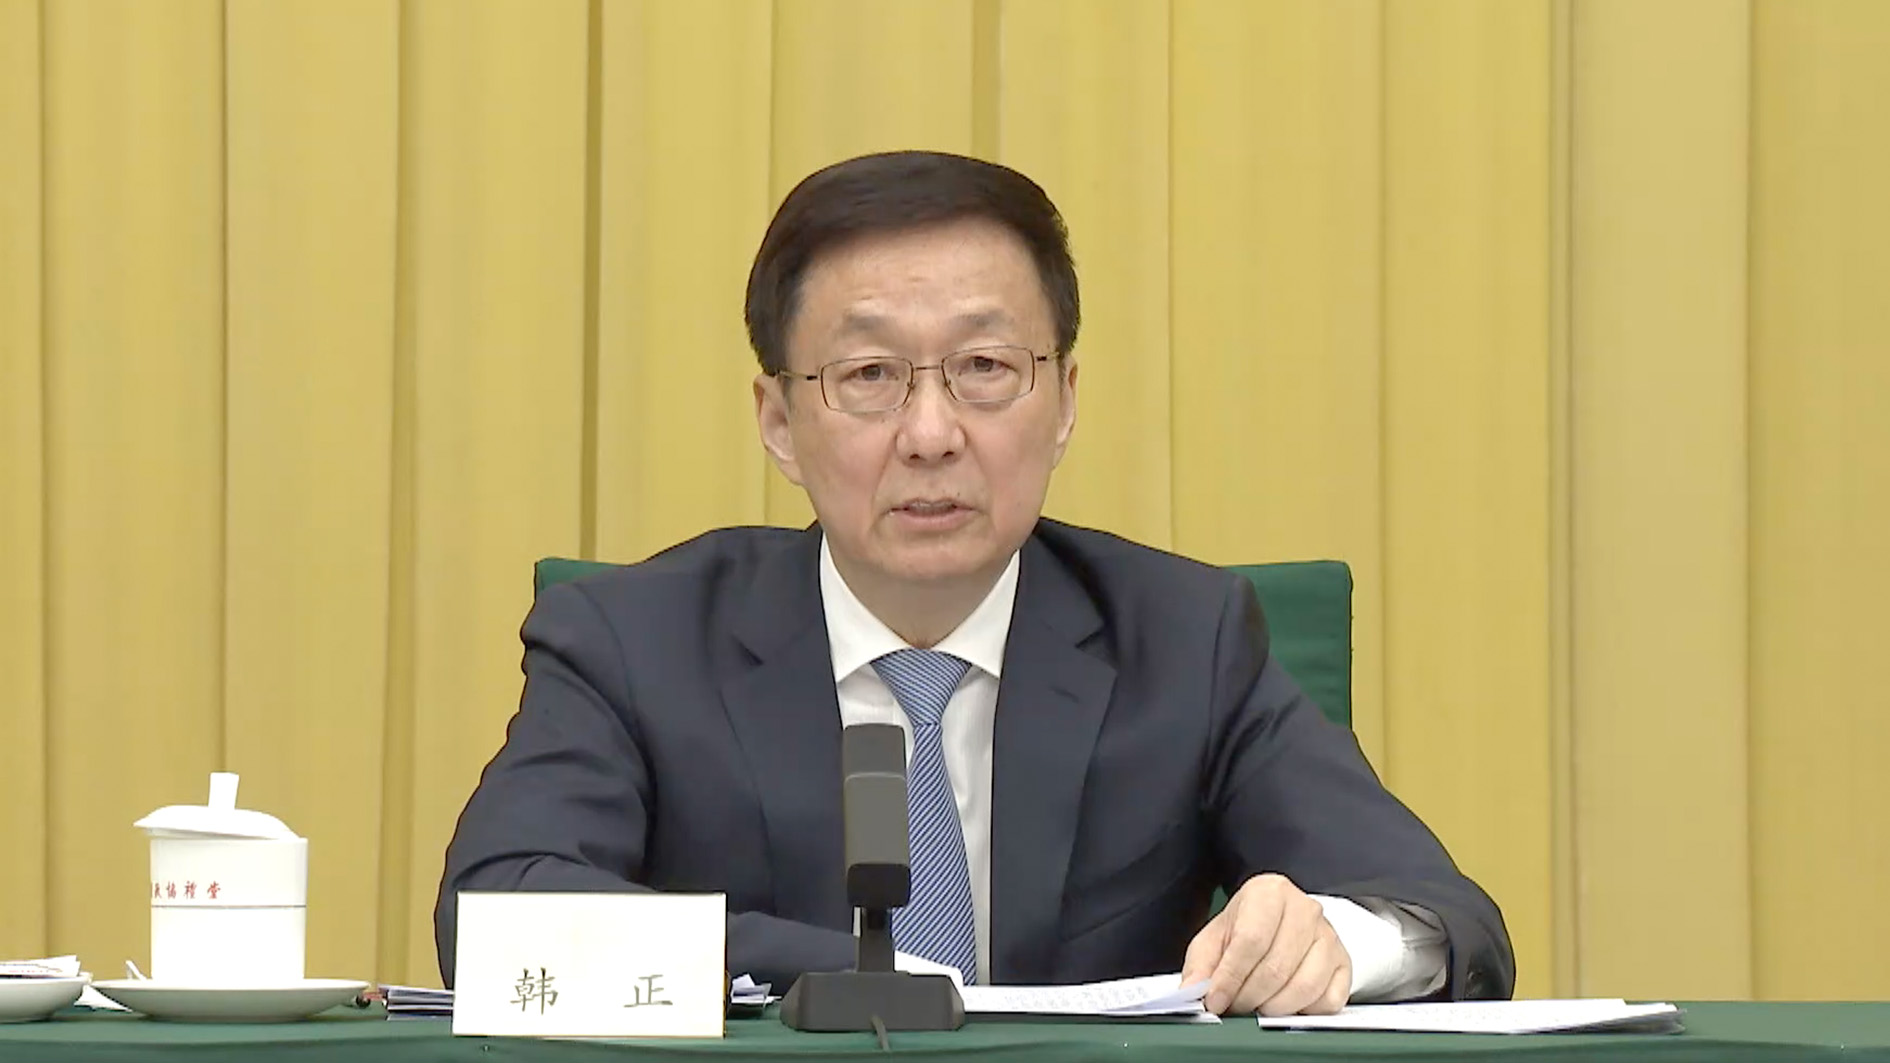 Vice Premier Han Zheng says Hong Kong must be administered by patriots -  CGTN